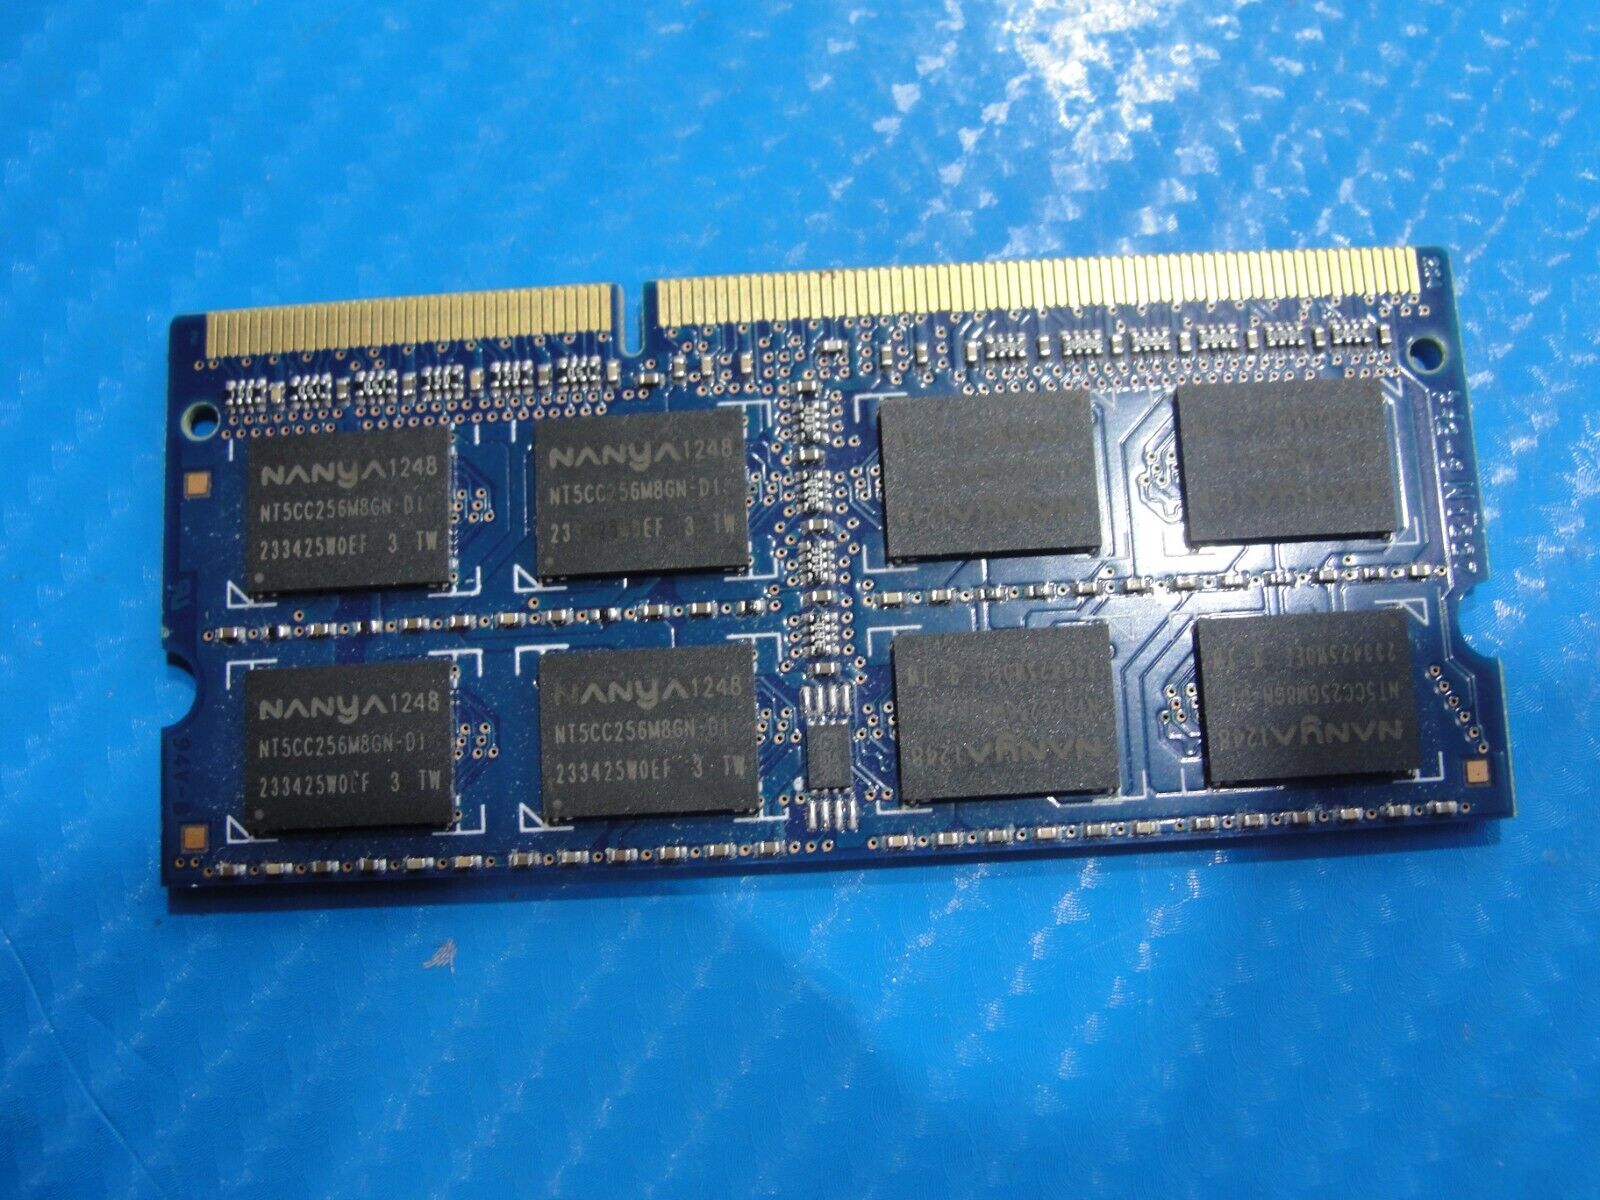 Sony PCG-41412L Nanya 4GB 2Rx8 PC3-12800S SO-DIMM Memory RAM NT4GC64B8HG0NS-DI